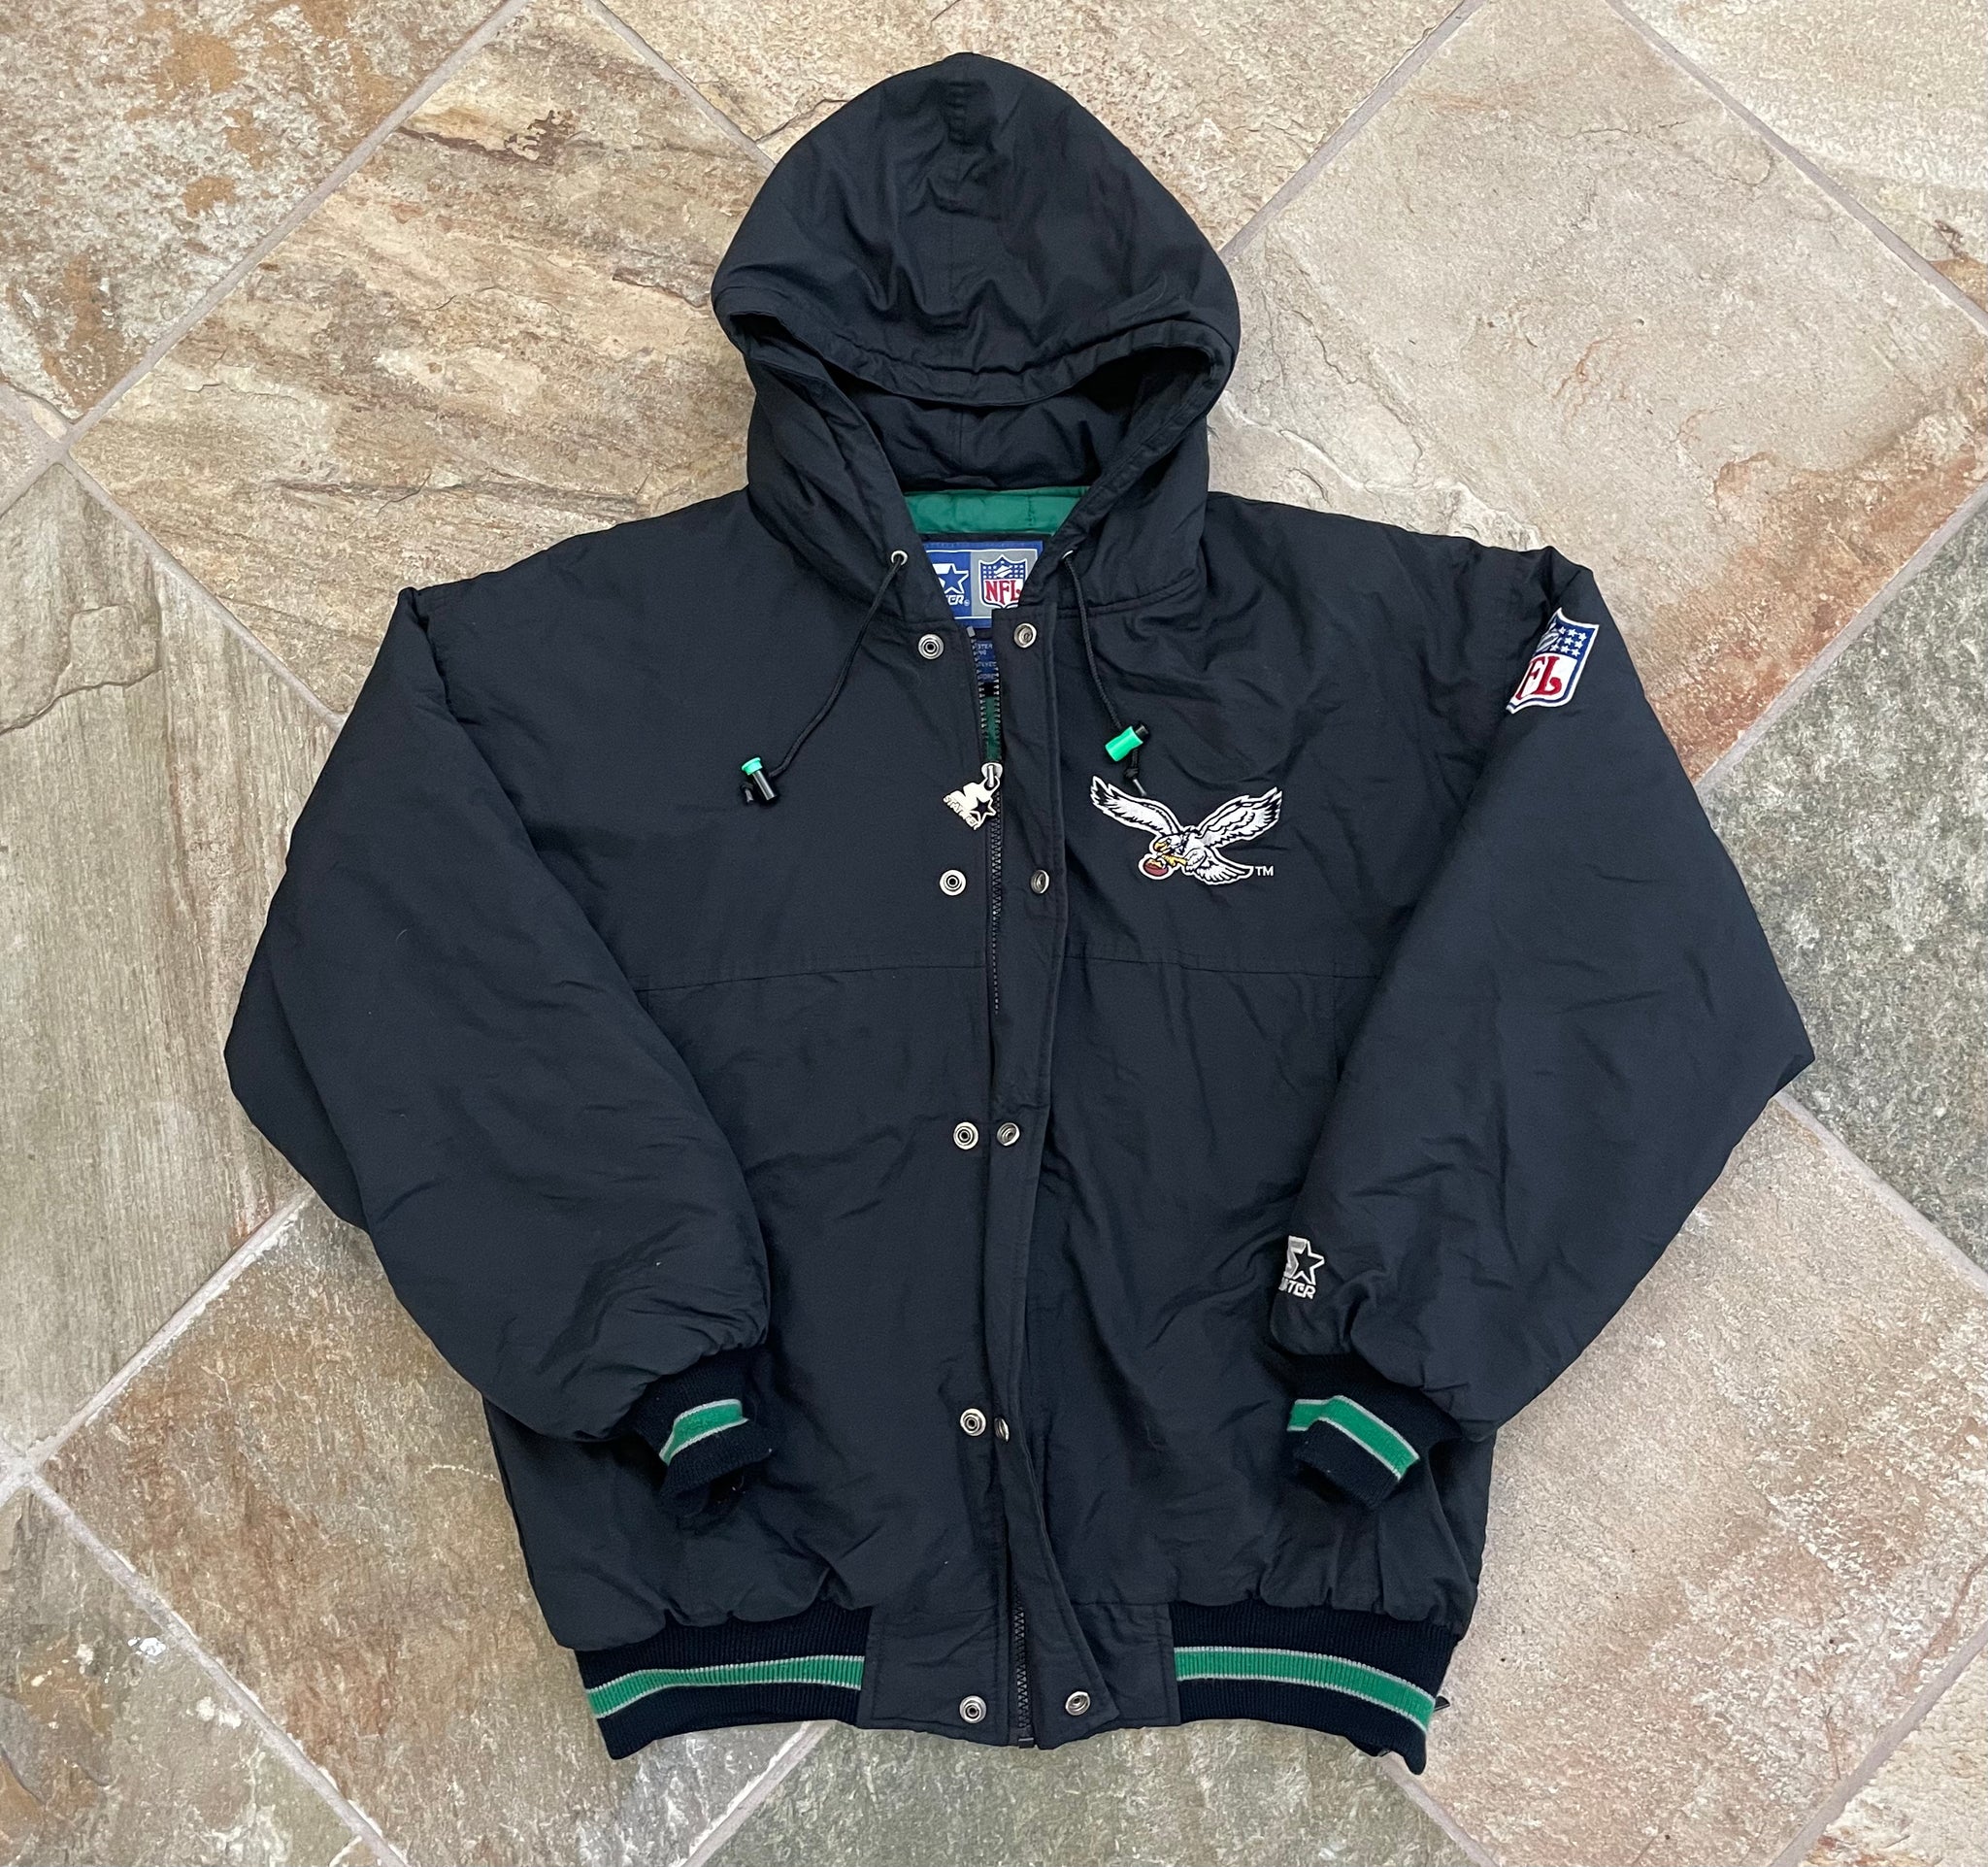 90's eagles starter jacket